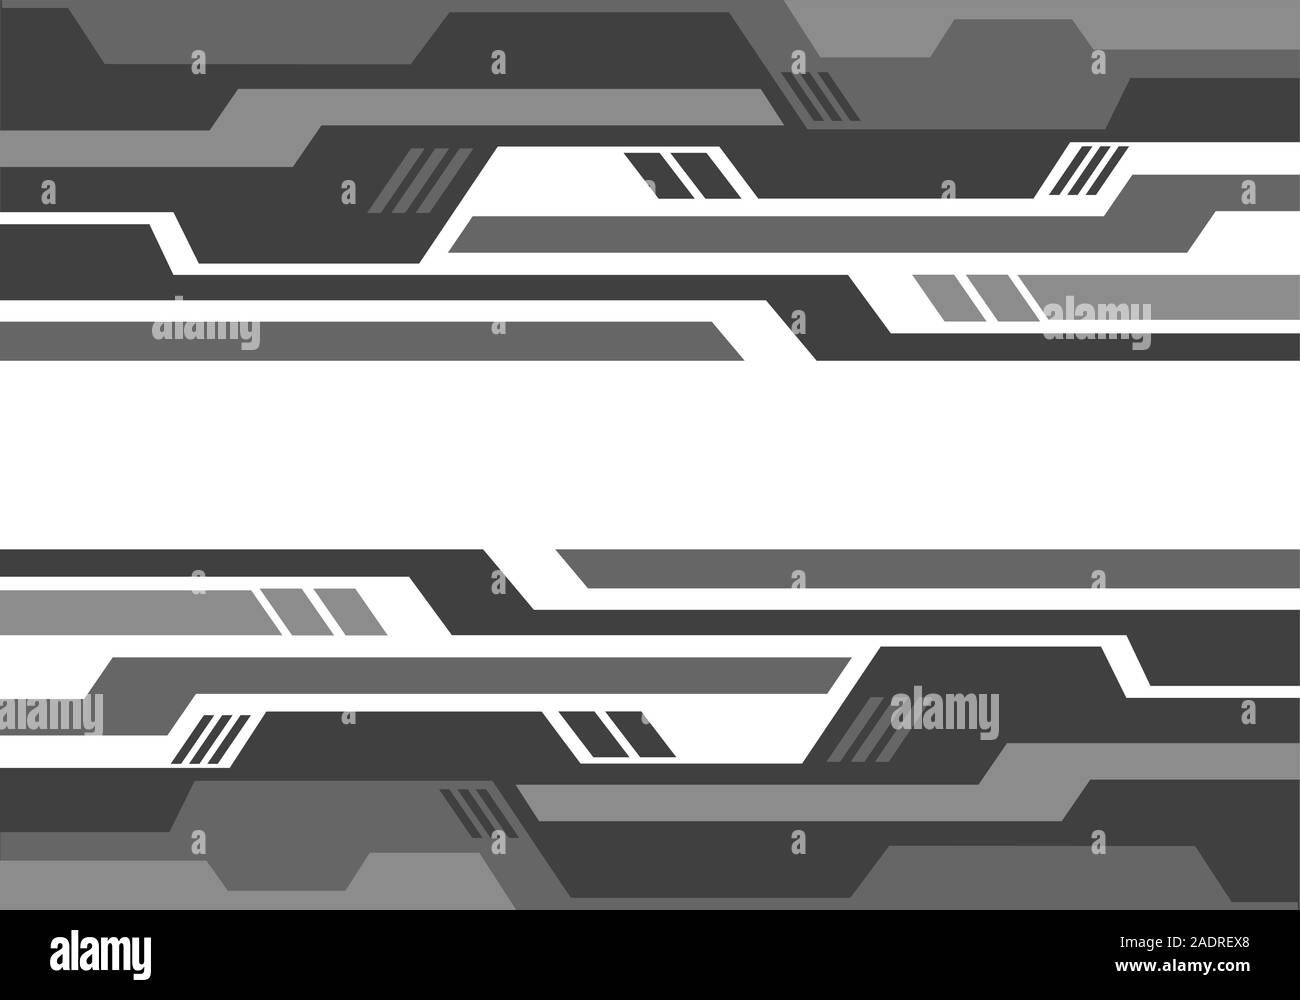 Résumé motif géométrique gris blanc sur le circuit design futuriste moderne technology background vector illustration. Illustration de Vecteur